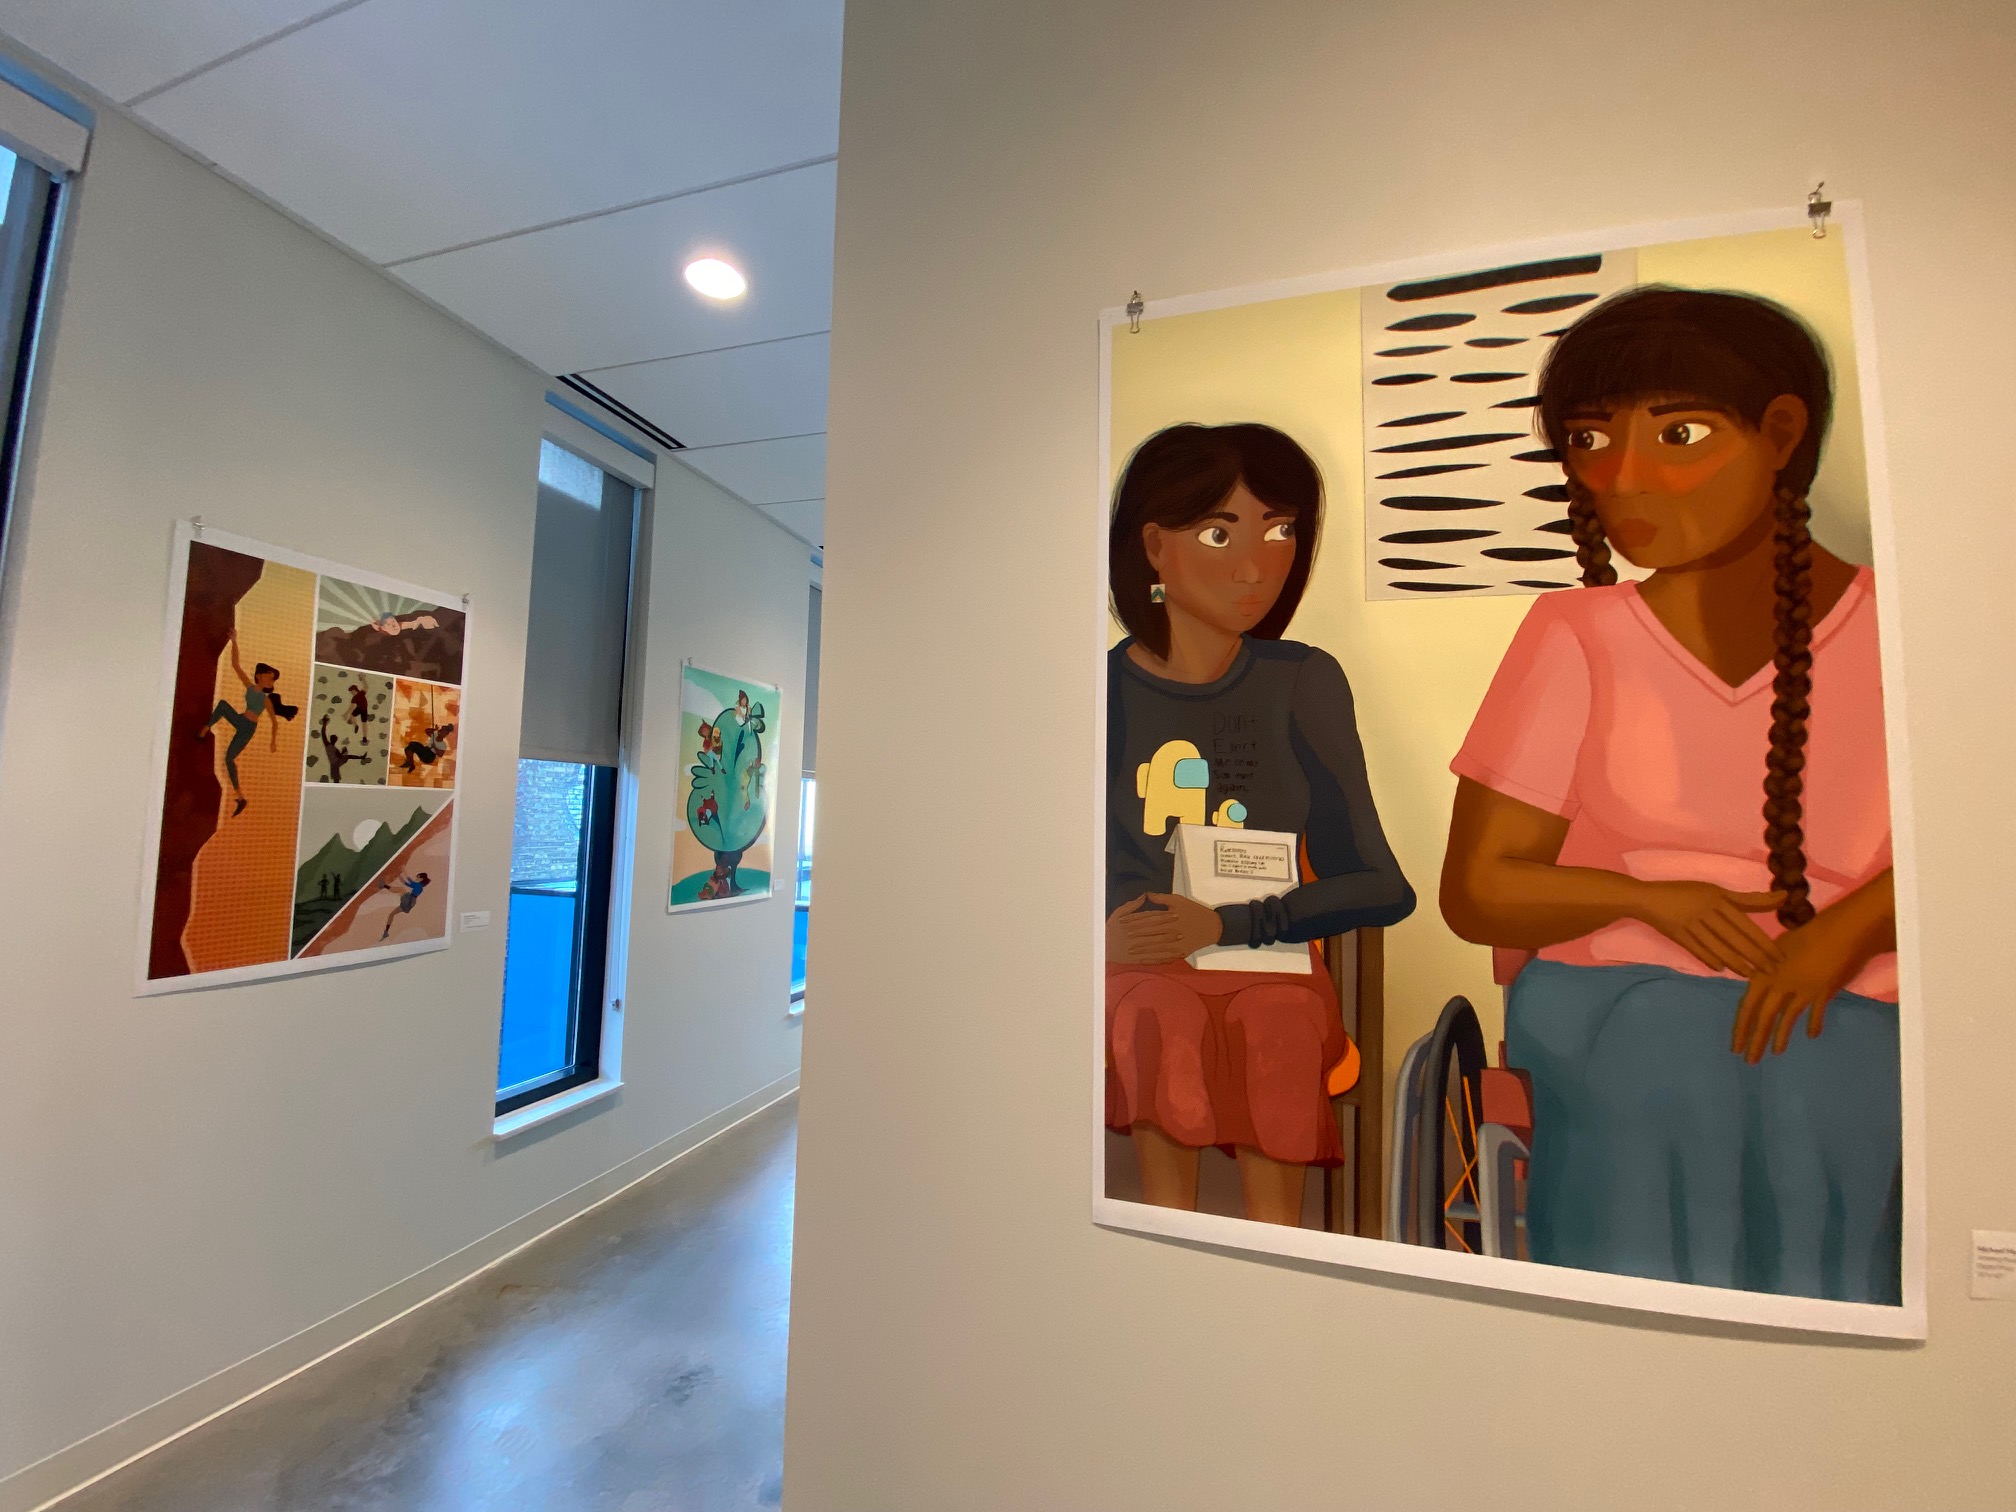 Family Tree Clinic Hallway Featuring Artworks by Deanna Ayala, Alyssa Hannan, and Michael Hasseriis